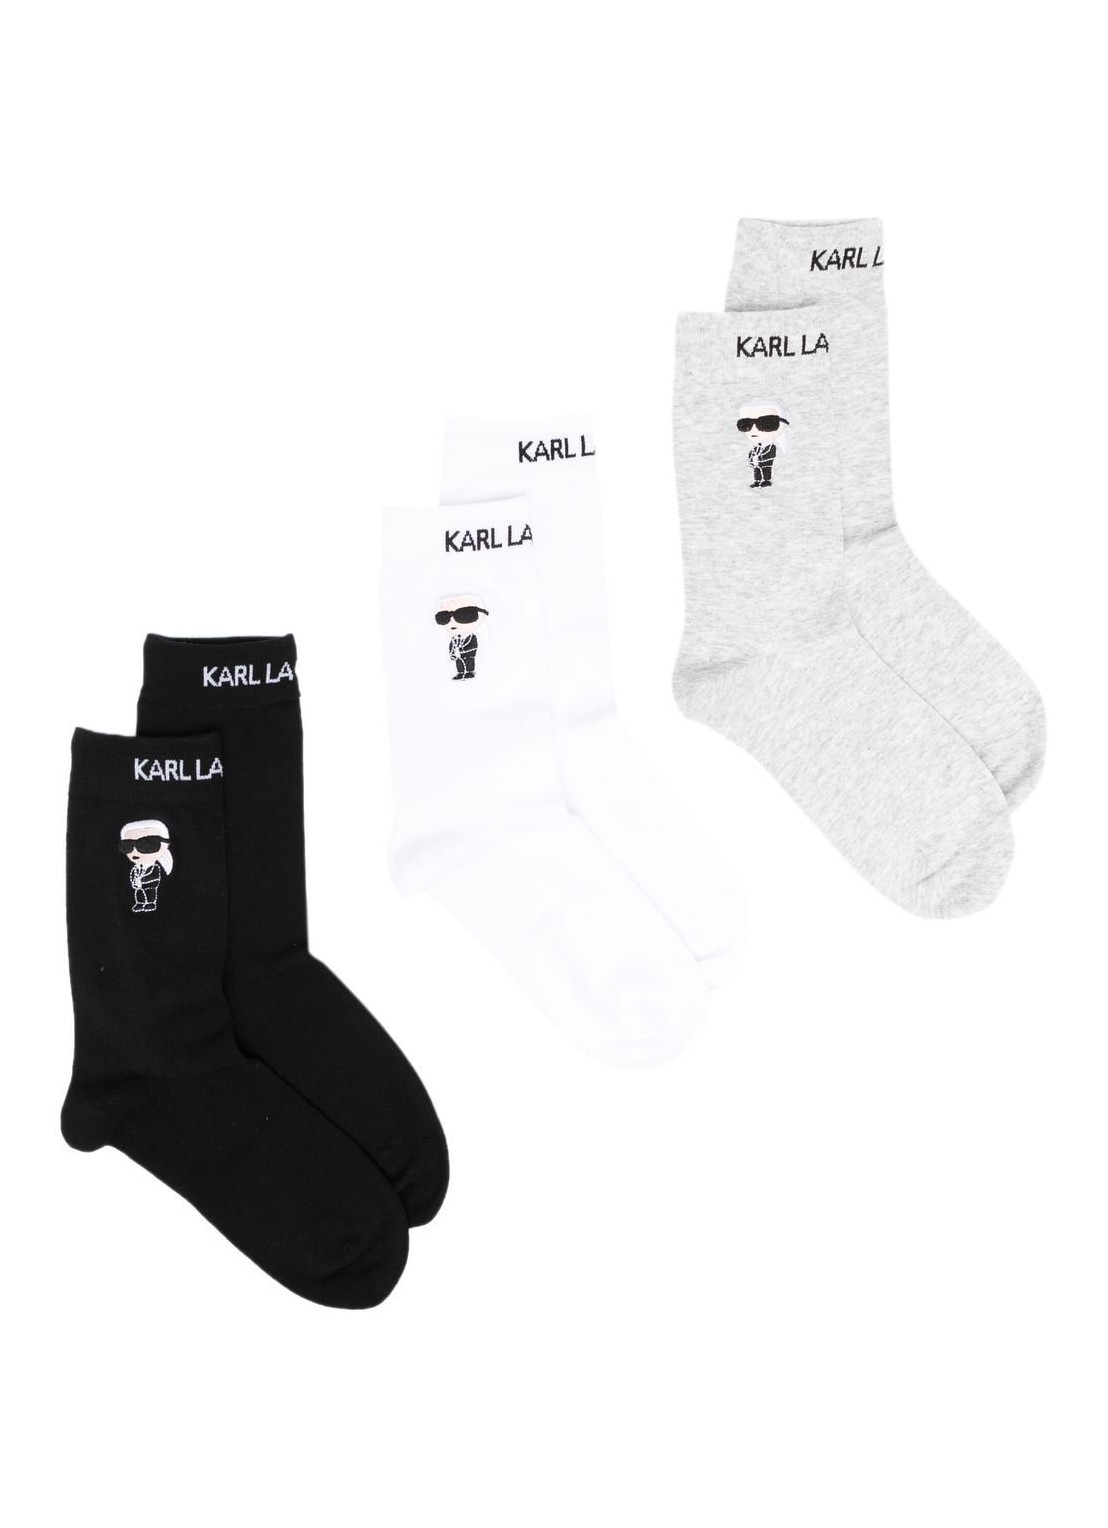 Calcetines karl lagerfeld socks womank/ikonik 2.0 socks 3 pack - 230w6001 972 talla multi
 